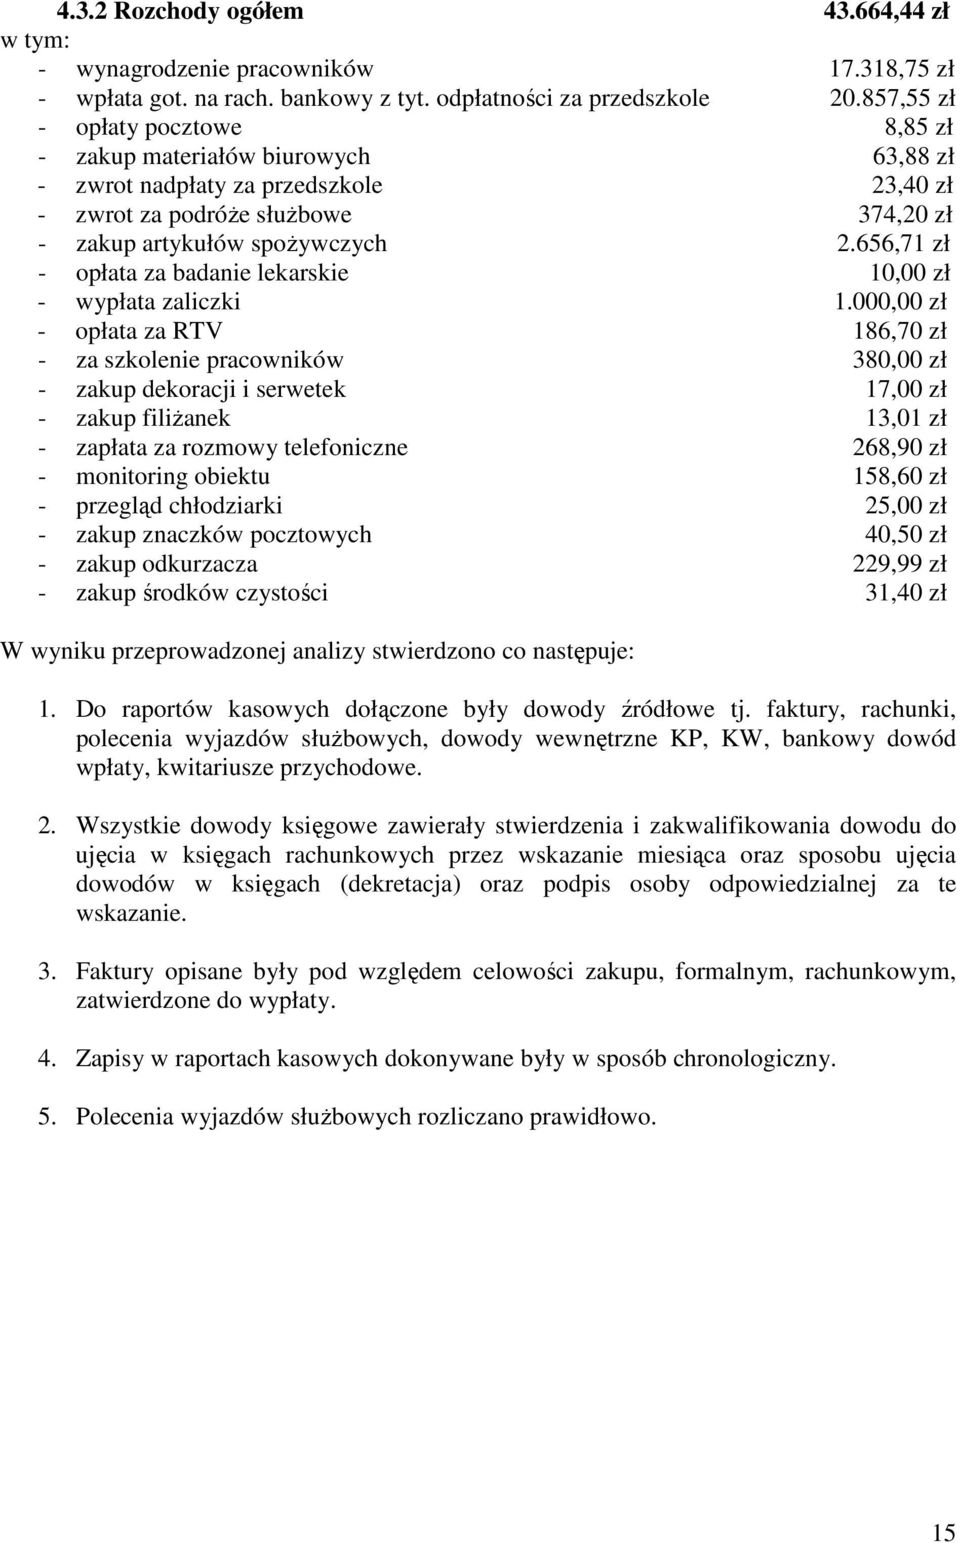 656,71 zł - opłata za badanie lekarskie 10,00 zł - wypłata zaliczki 1.